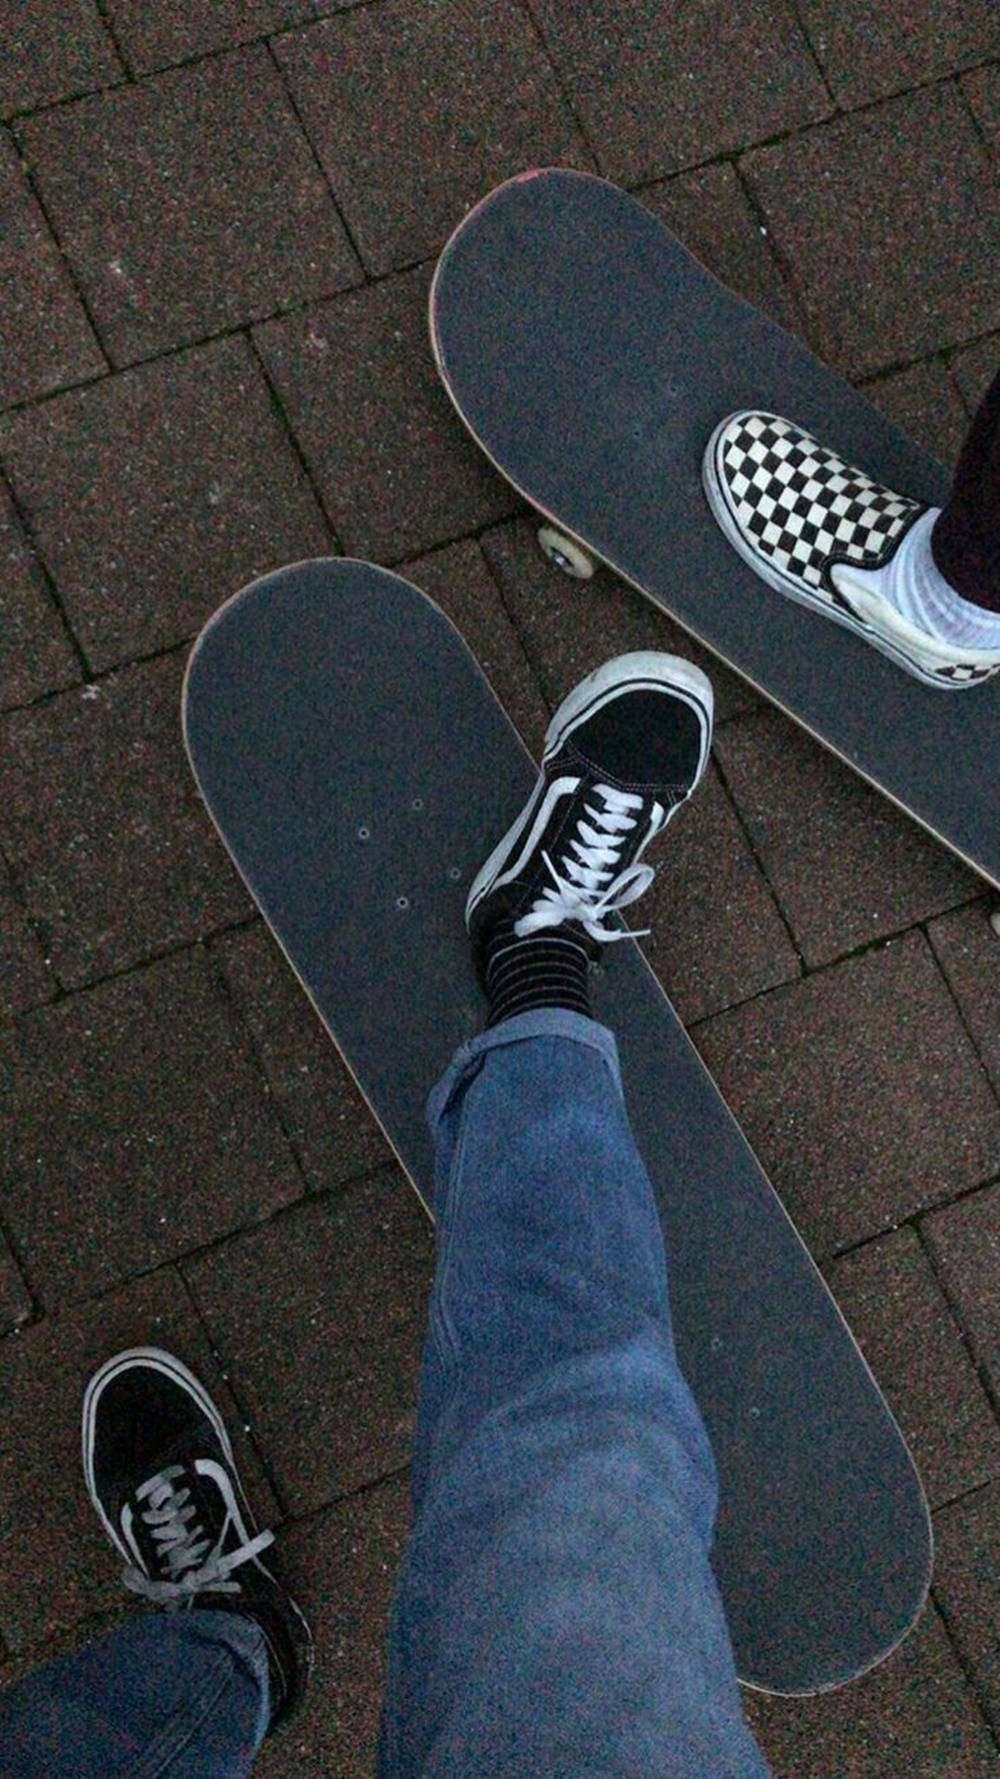 Vans Black And White Skateboard Shoes Skater Aesthetic Background